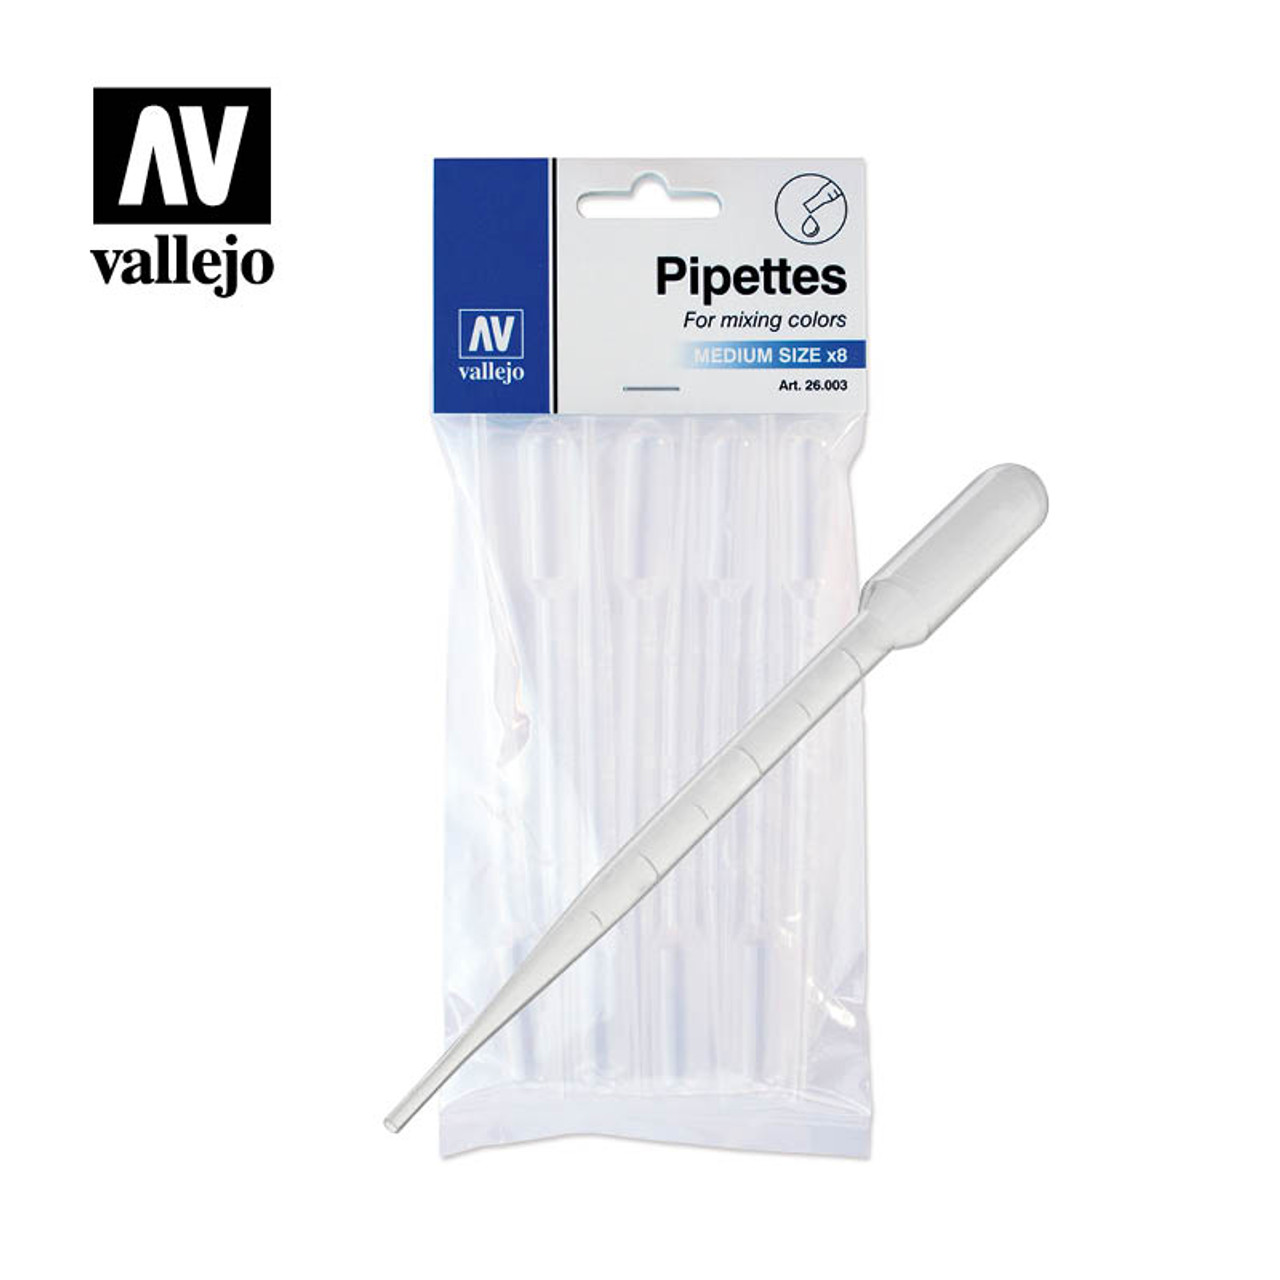 Vallejo 26003 Pipettes 3 ml/0.10 fl oz 8 per Package